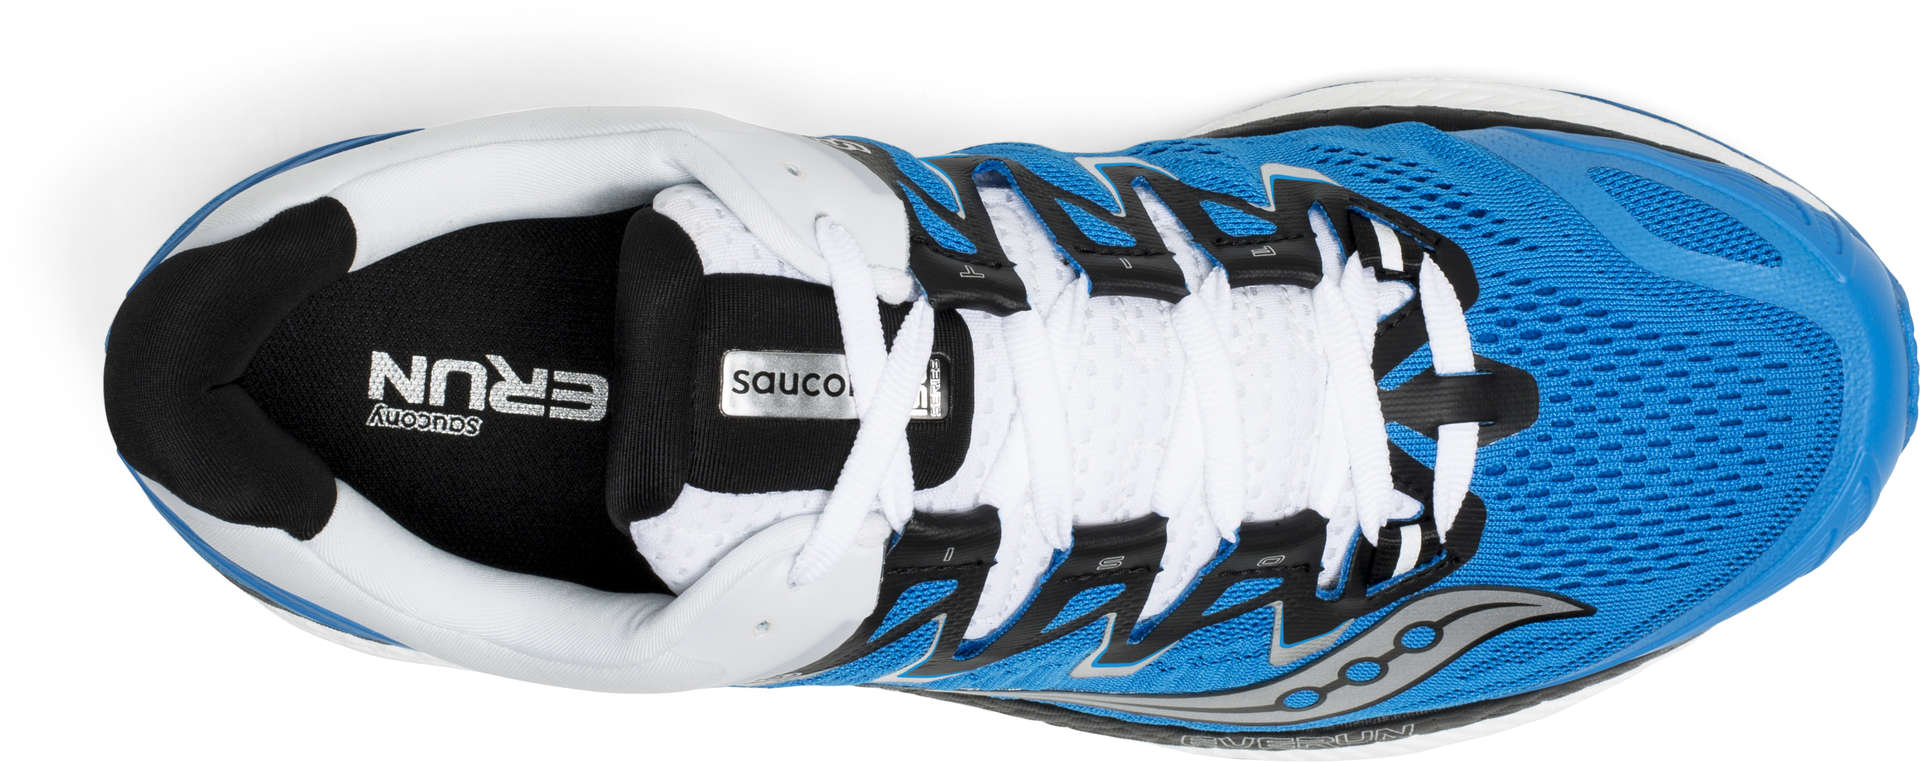 Saucony Triumph ISO 4 Hardloopschoenen Blauw/Zwart/Wit Heren